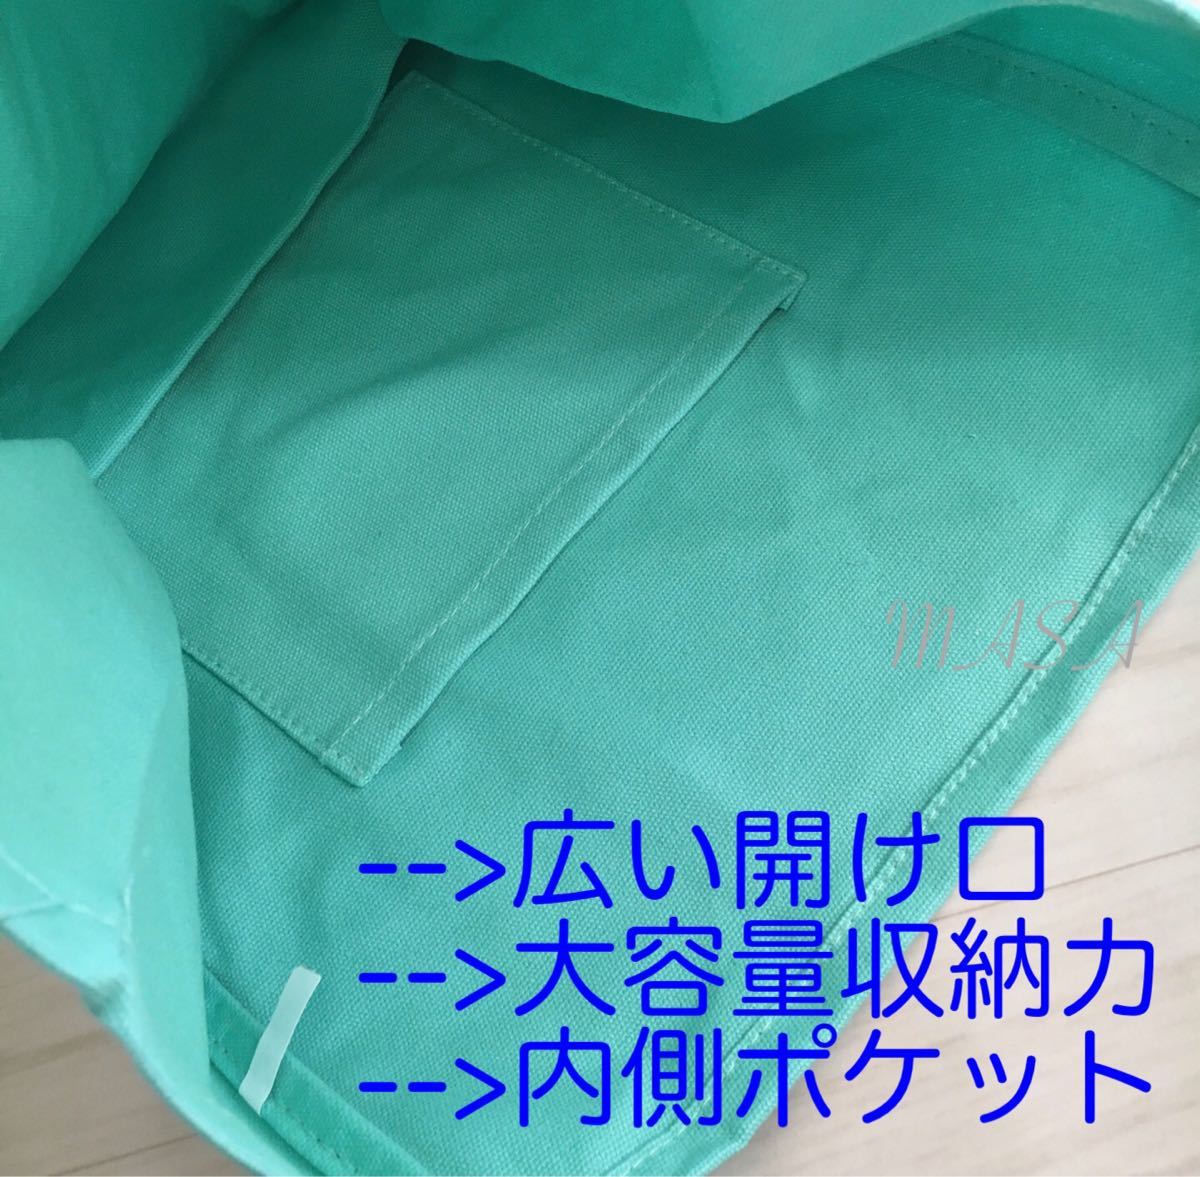 新品 バッグ 鞄 トートバッグ 通学 エコ マザーバッグ 韓国ファッション ライトパープル